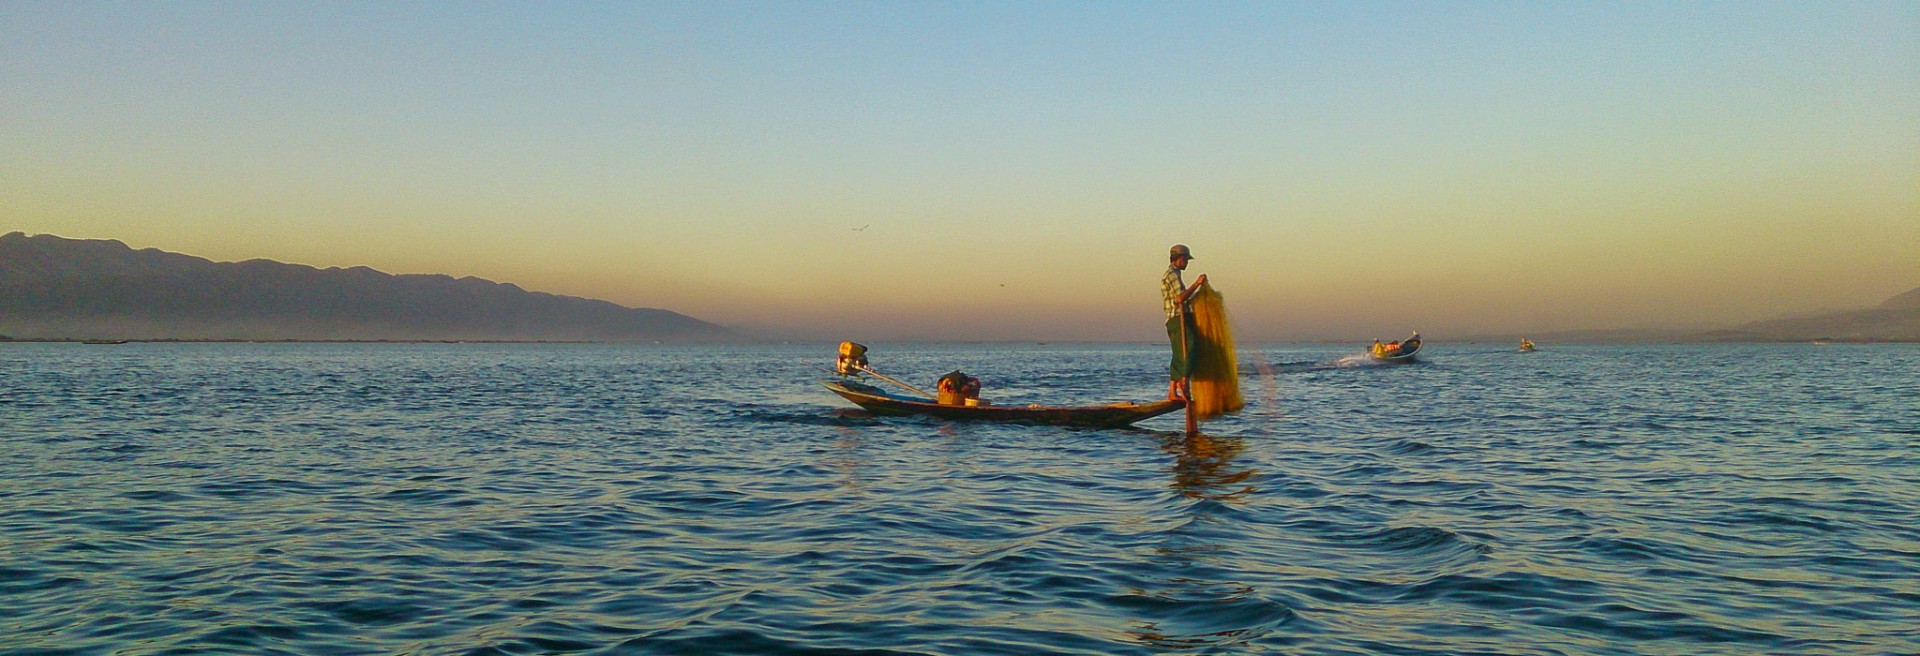 Inle Lake, Burma/Myanmar. 10 januari 2014